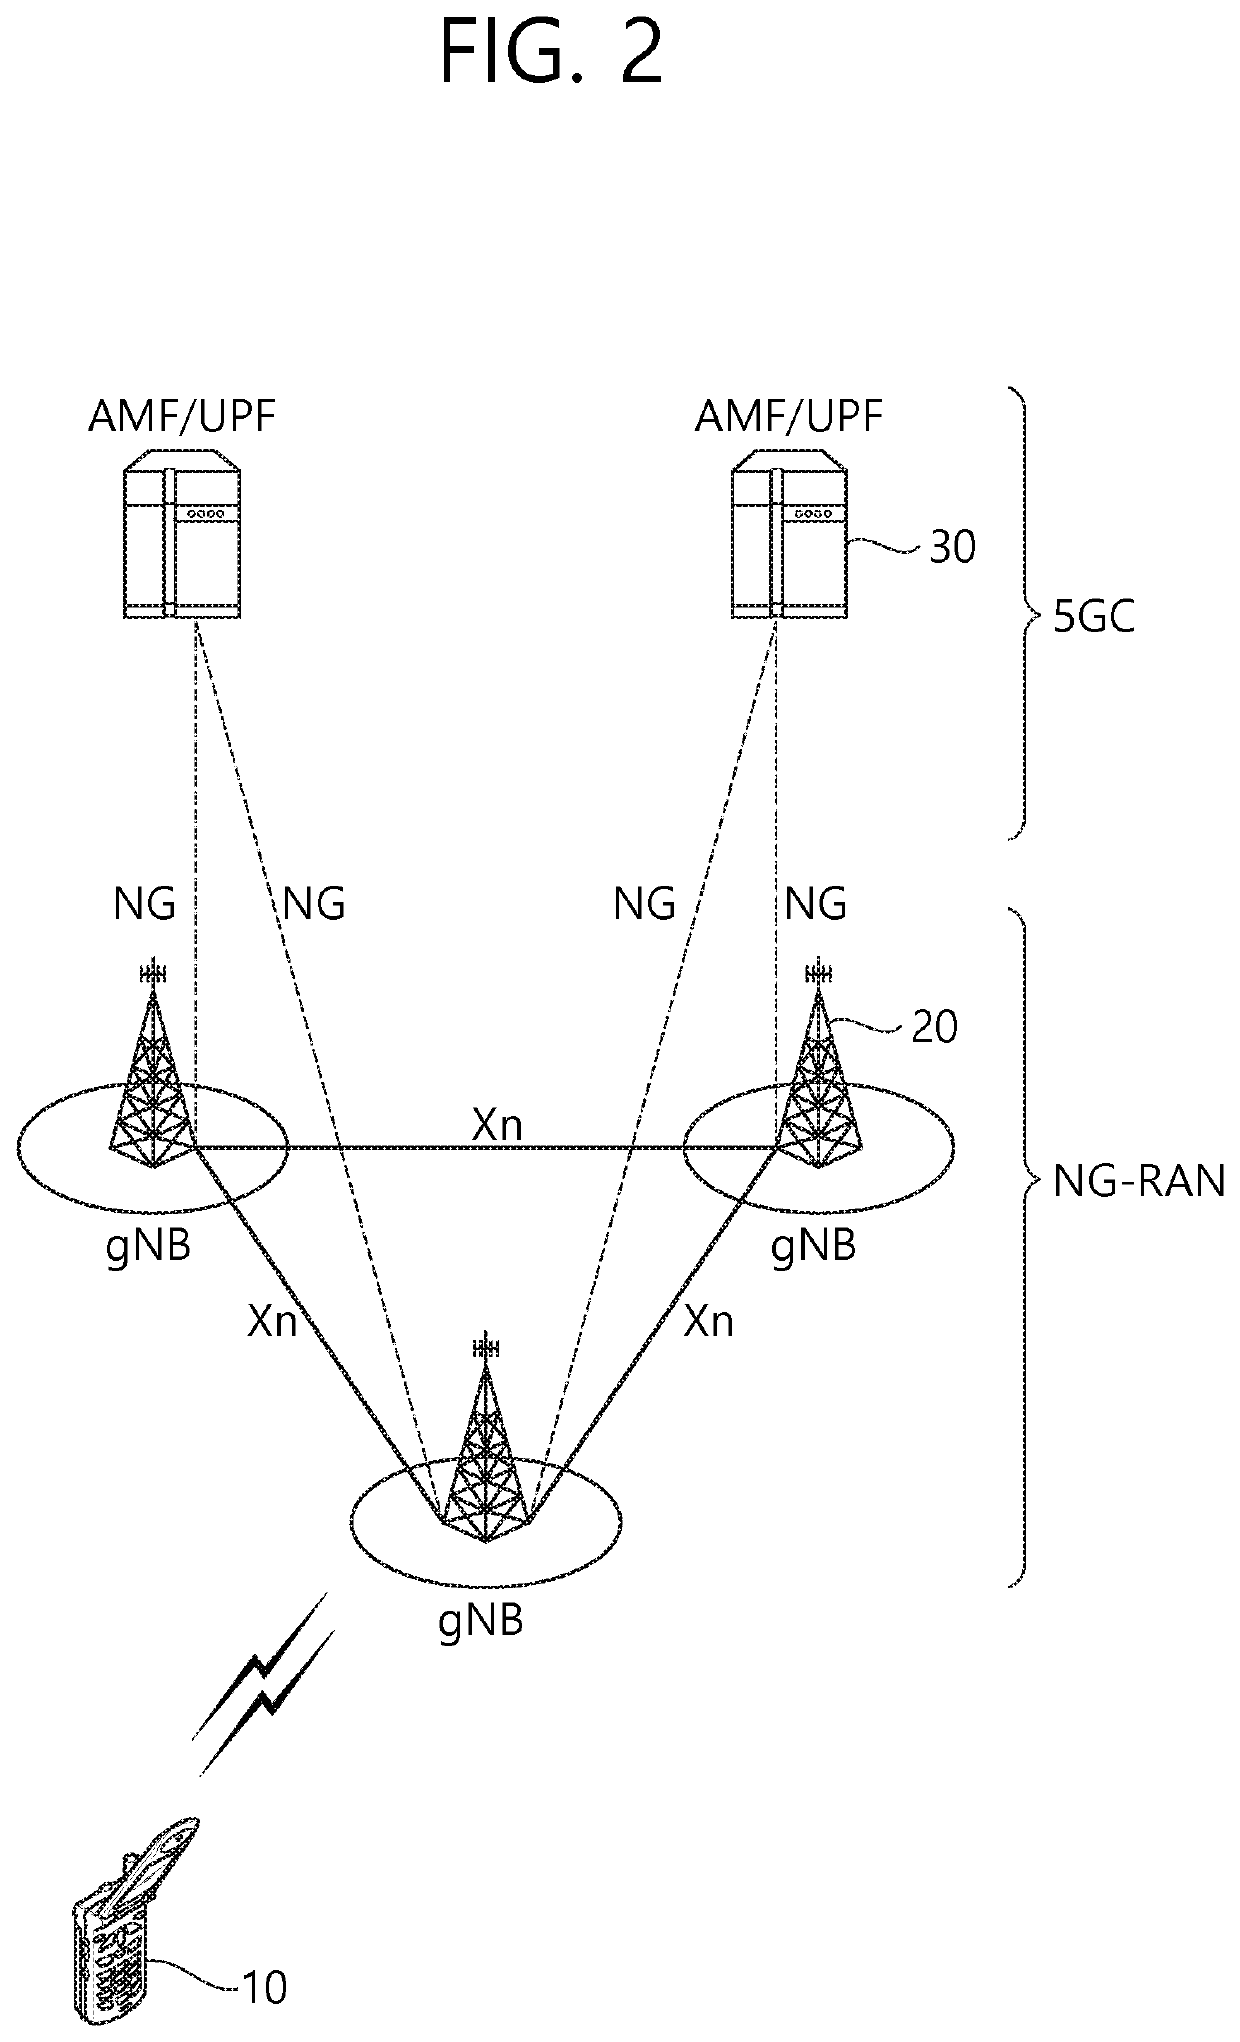 Transmission of sidelink control information of nr v2x